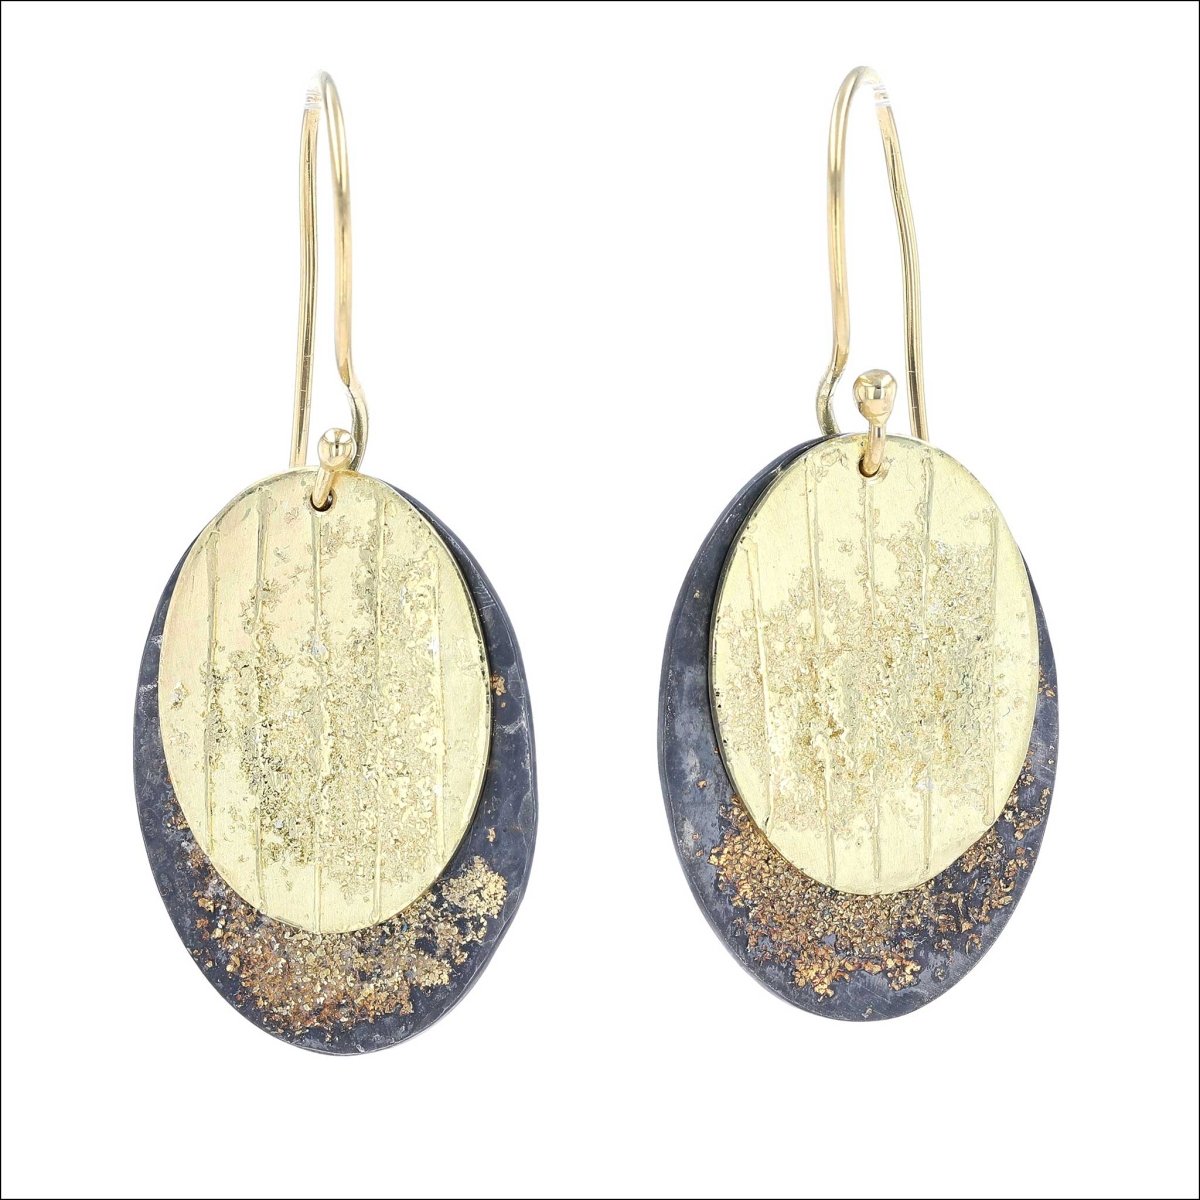 Oval Gold Dust Disc Earrings 18KY Sterling Silver - JewelsmithEarrings